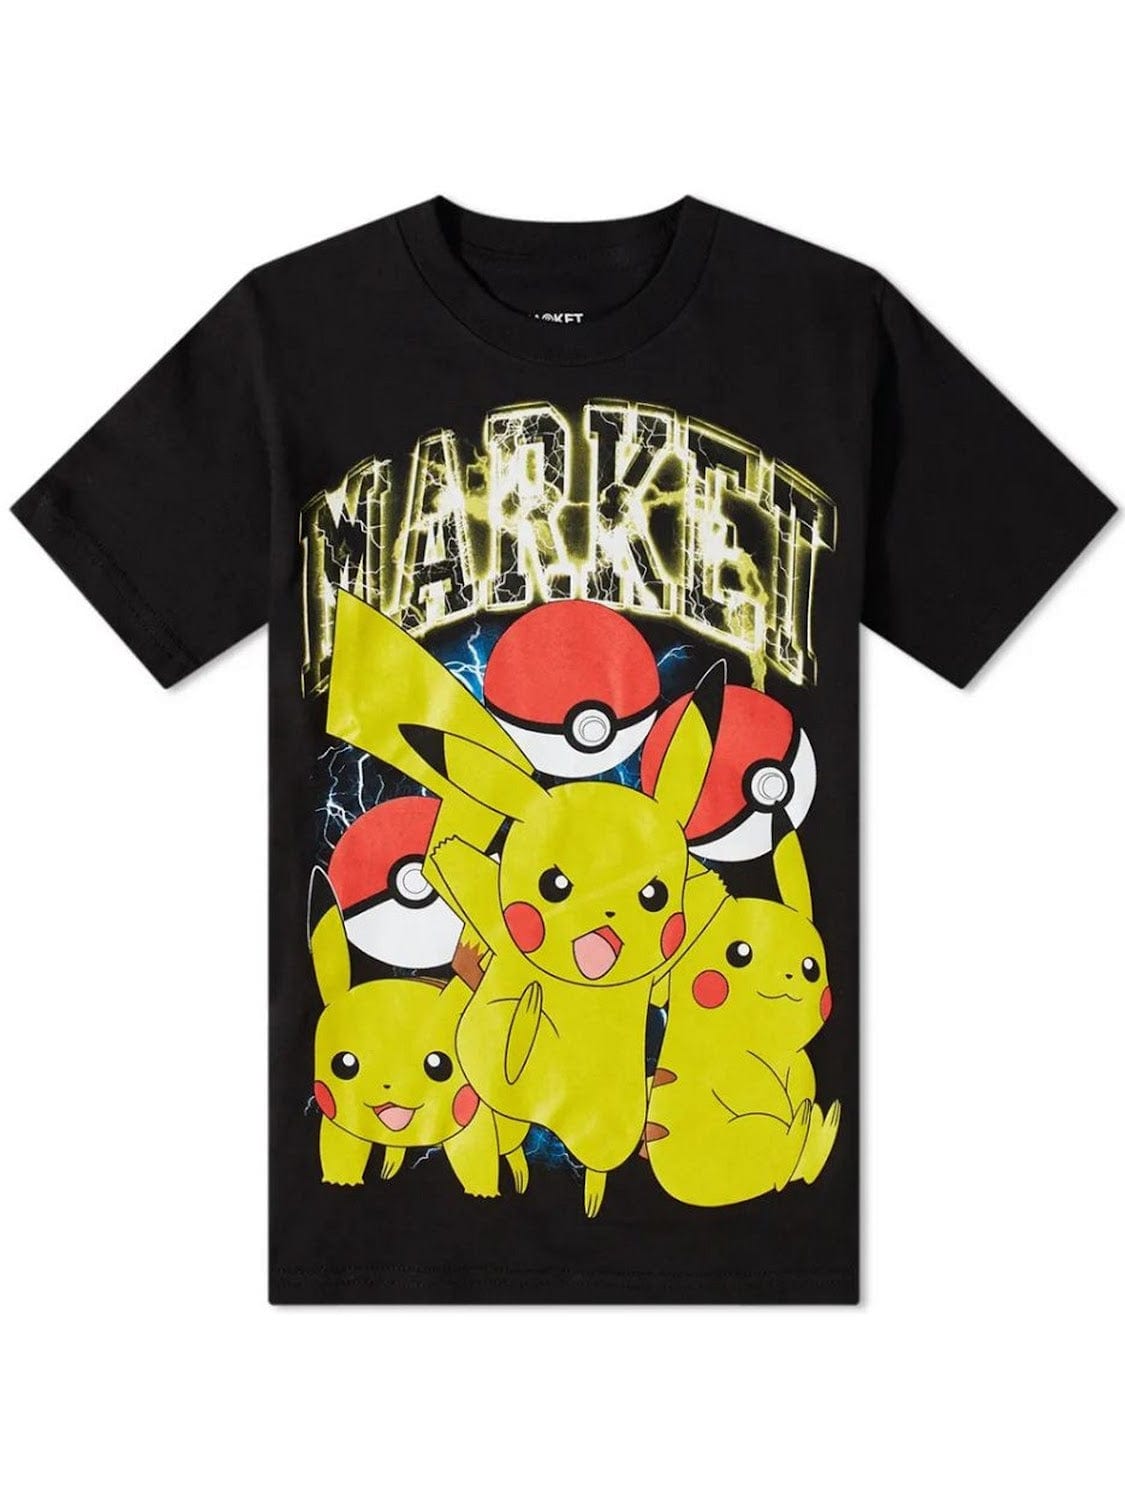 Market Pokemon Pikachu Electric Shock